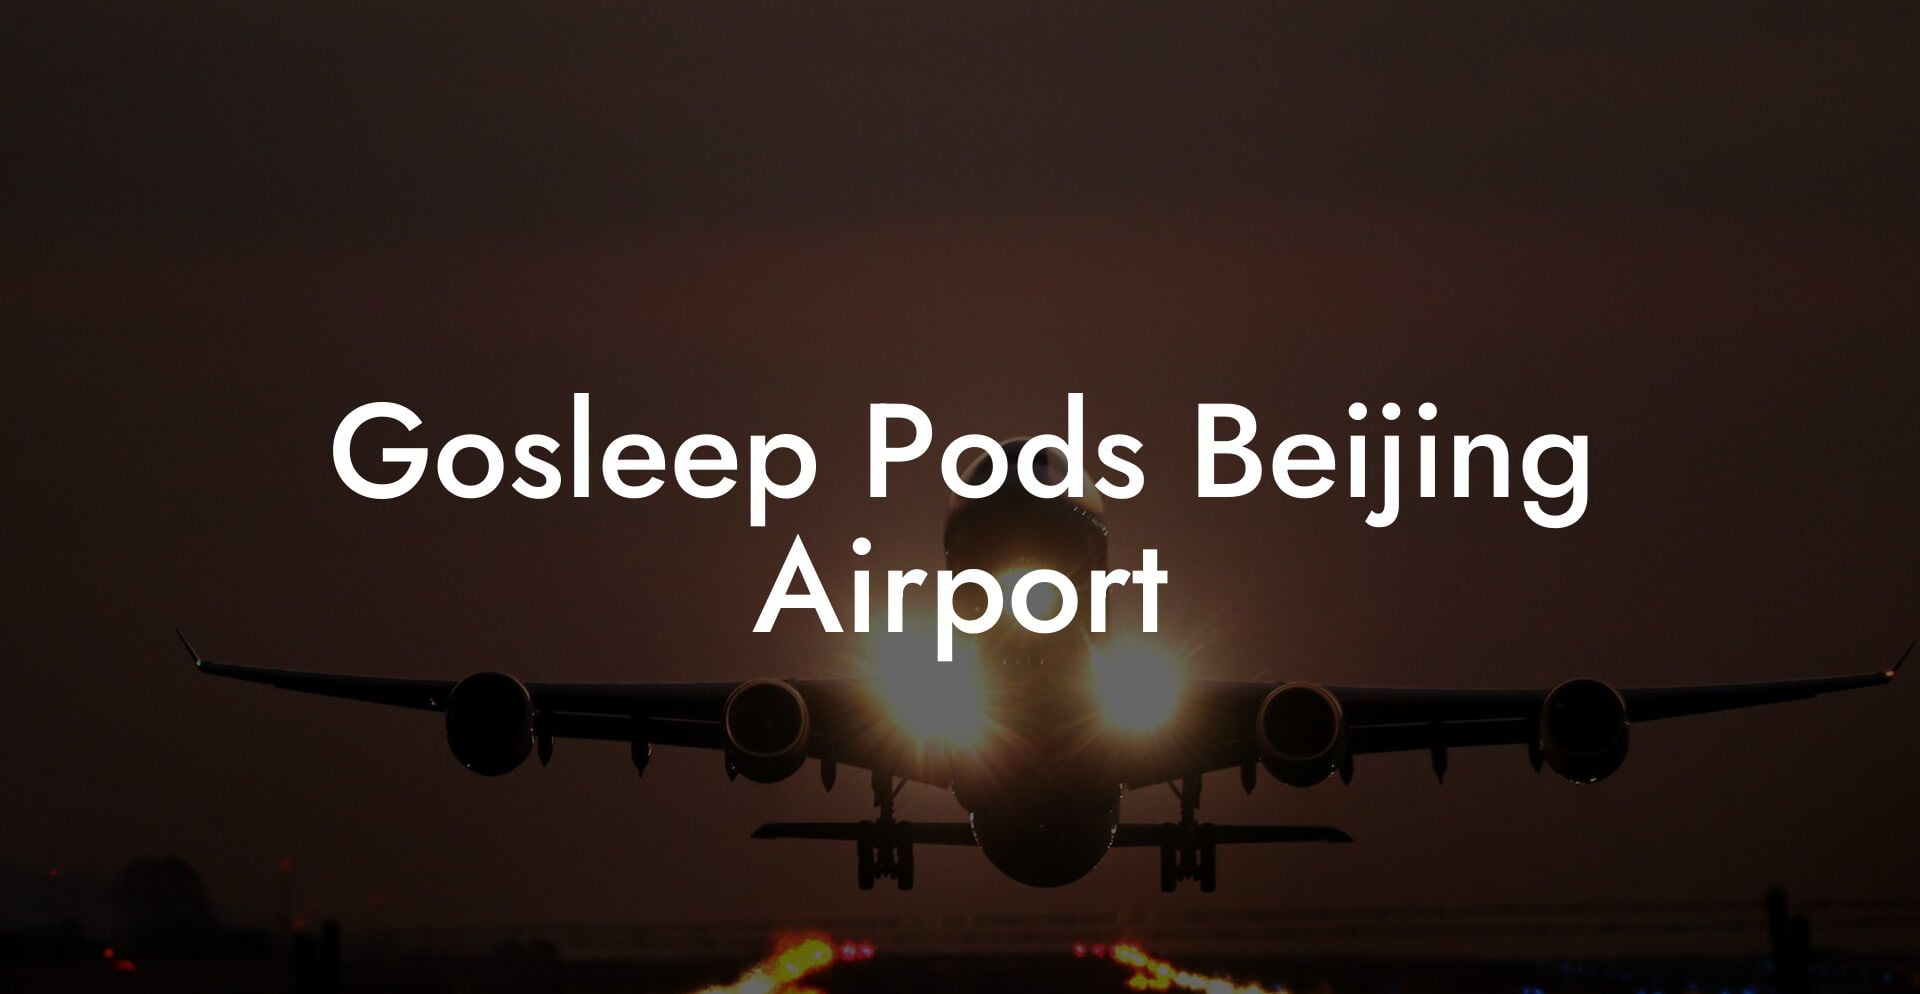 Gosleep Pods Beijing Airport